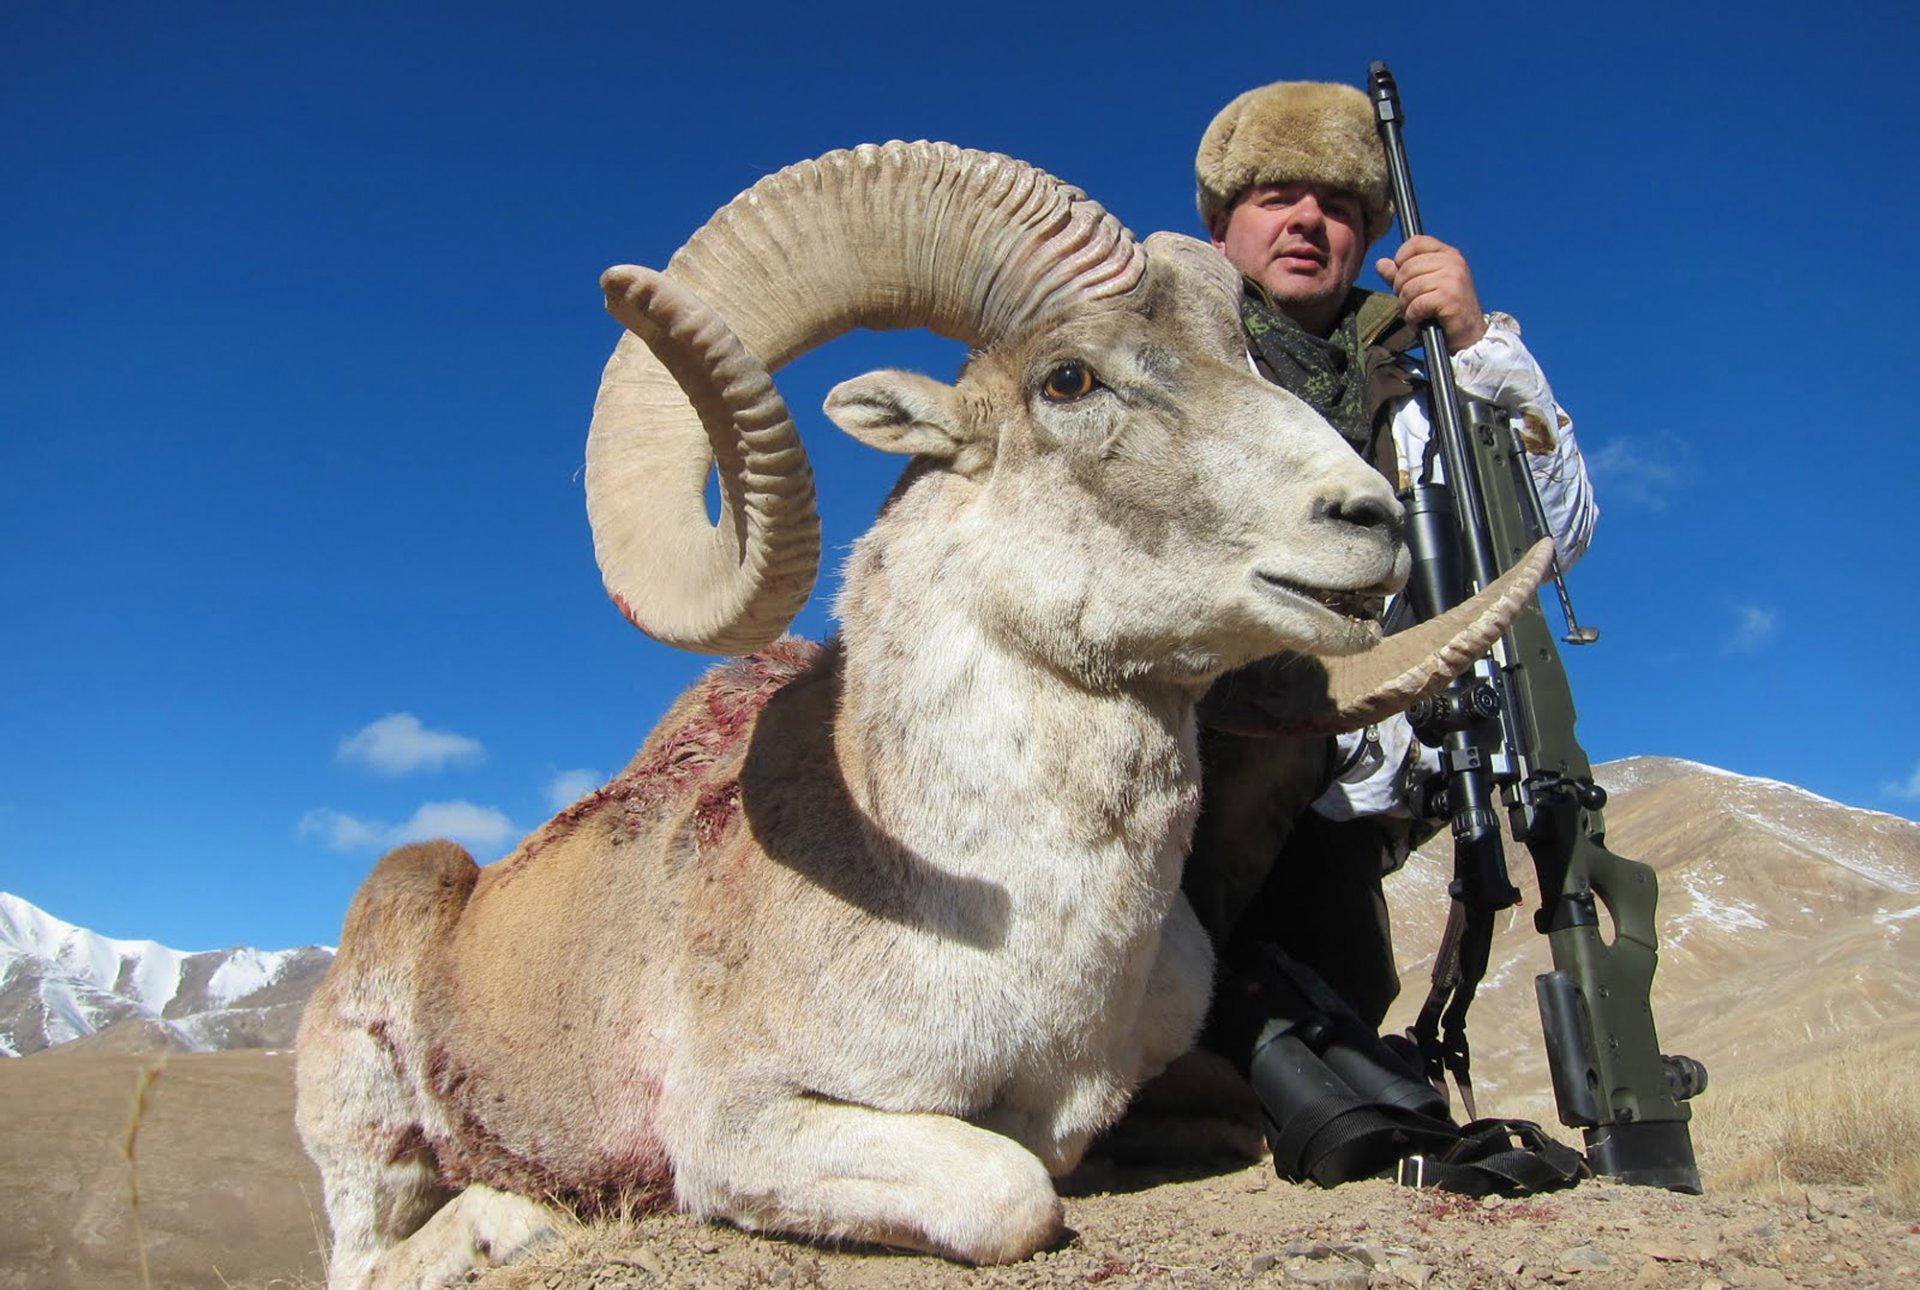 Охота на баранов Марко Поло и козерогов. Кыргызстан